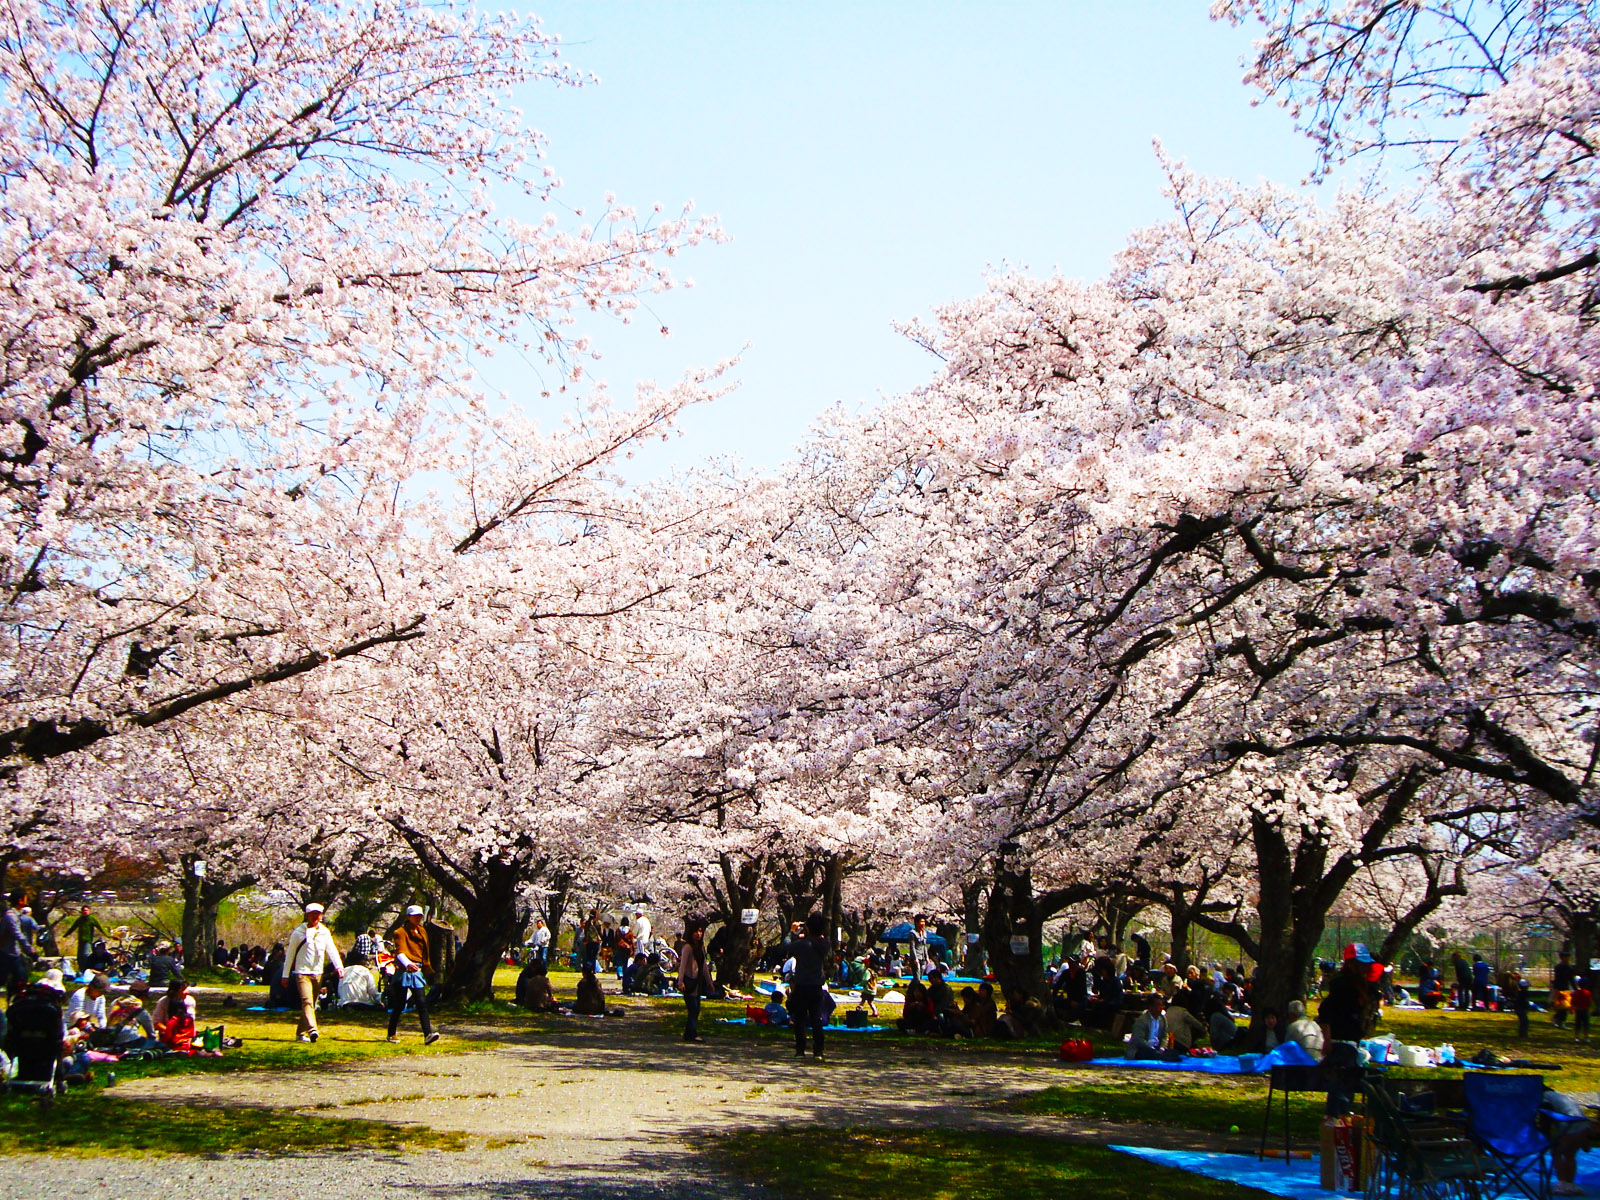 7 Tempat Terindah Melihat Bunga Sakura Di Jepang